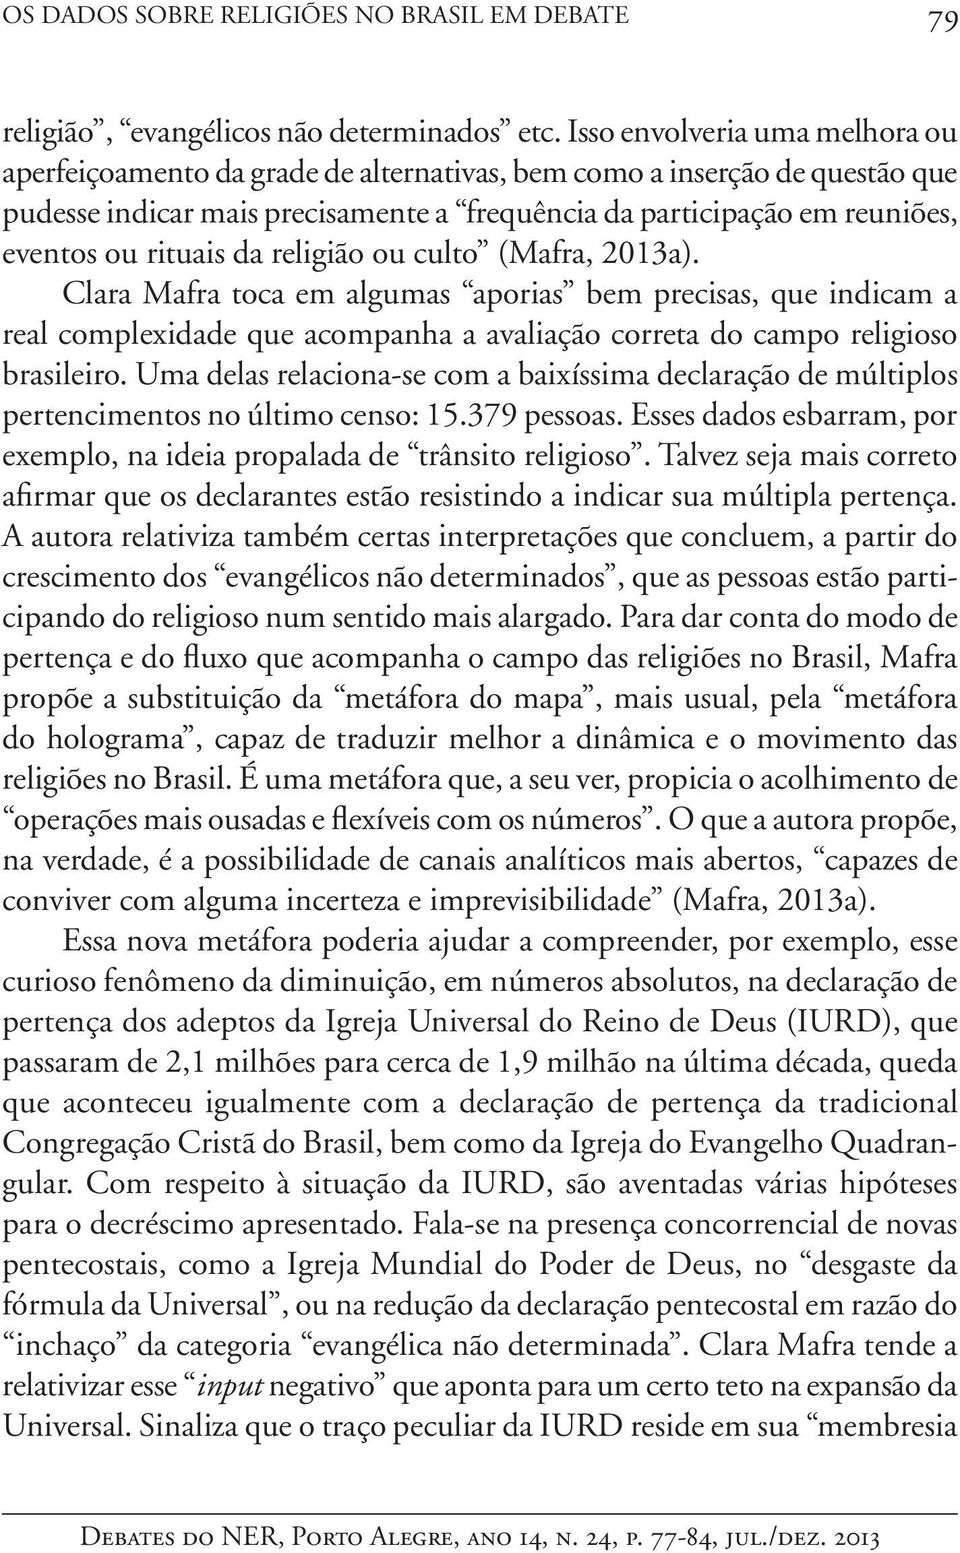 rituais da religião ou culto (Mafra, 2013a). Clara Mafra toca em algumas aporias bem precisas, que indicam a real complexidade que acompanha a avaliação correta do campo religioso brasileiro.